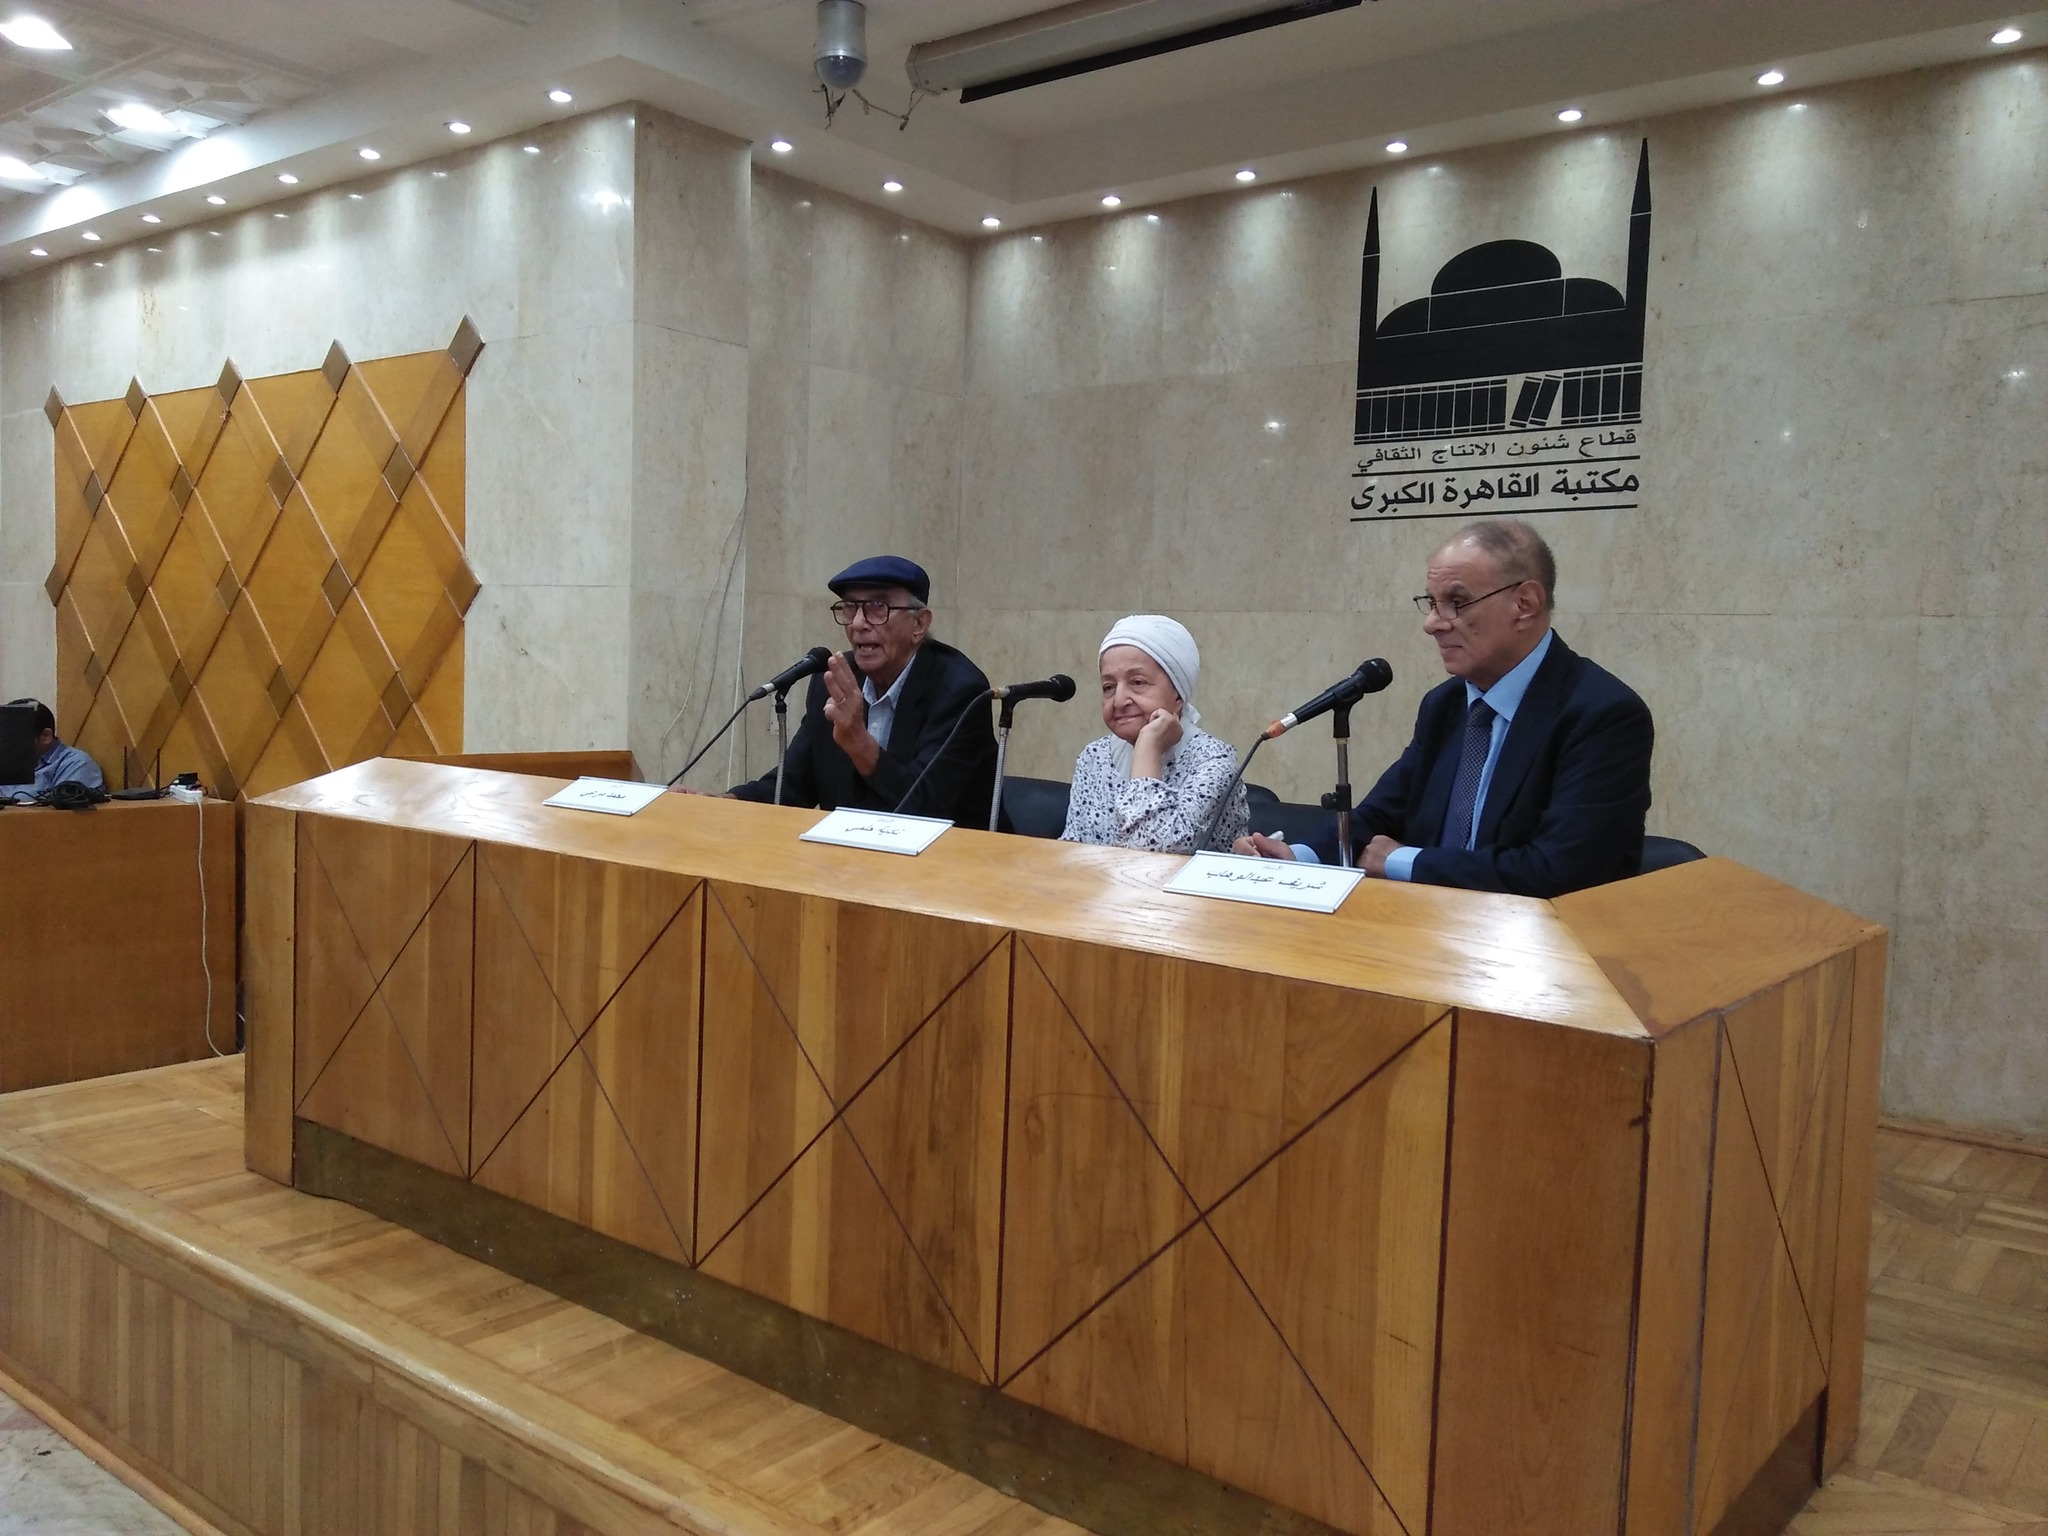 مكتبة القاهرة الكبرى بالزمالك تحتفل بمرور 70 عاما على انطلاق إذاعة صوت العرب (7)